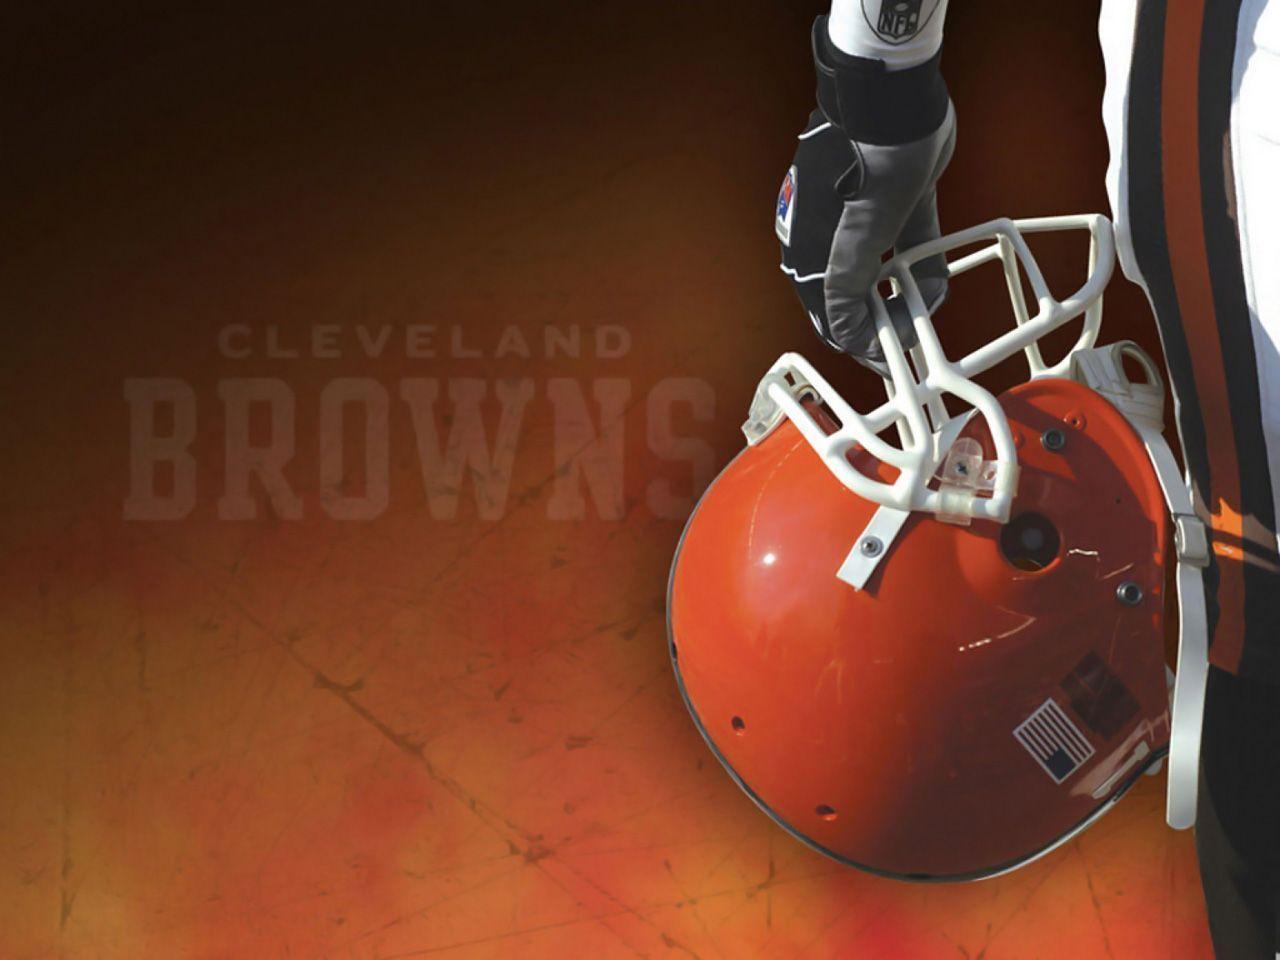 Cleveland Browns NFL Football Team Wallpaper